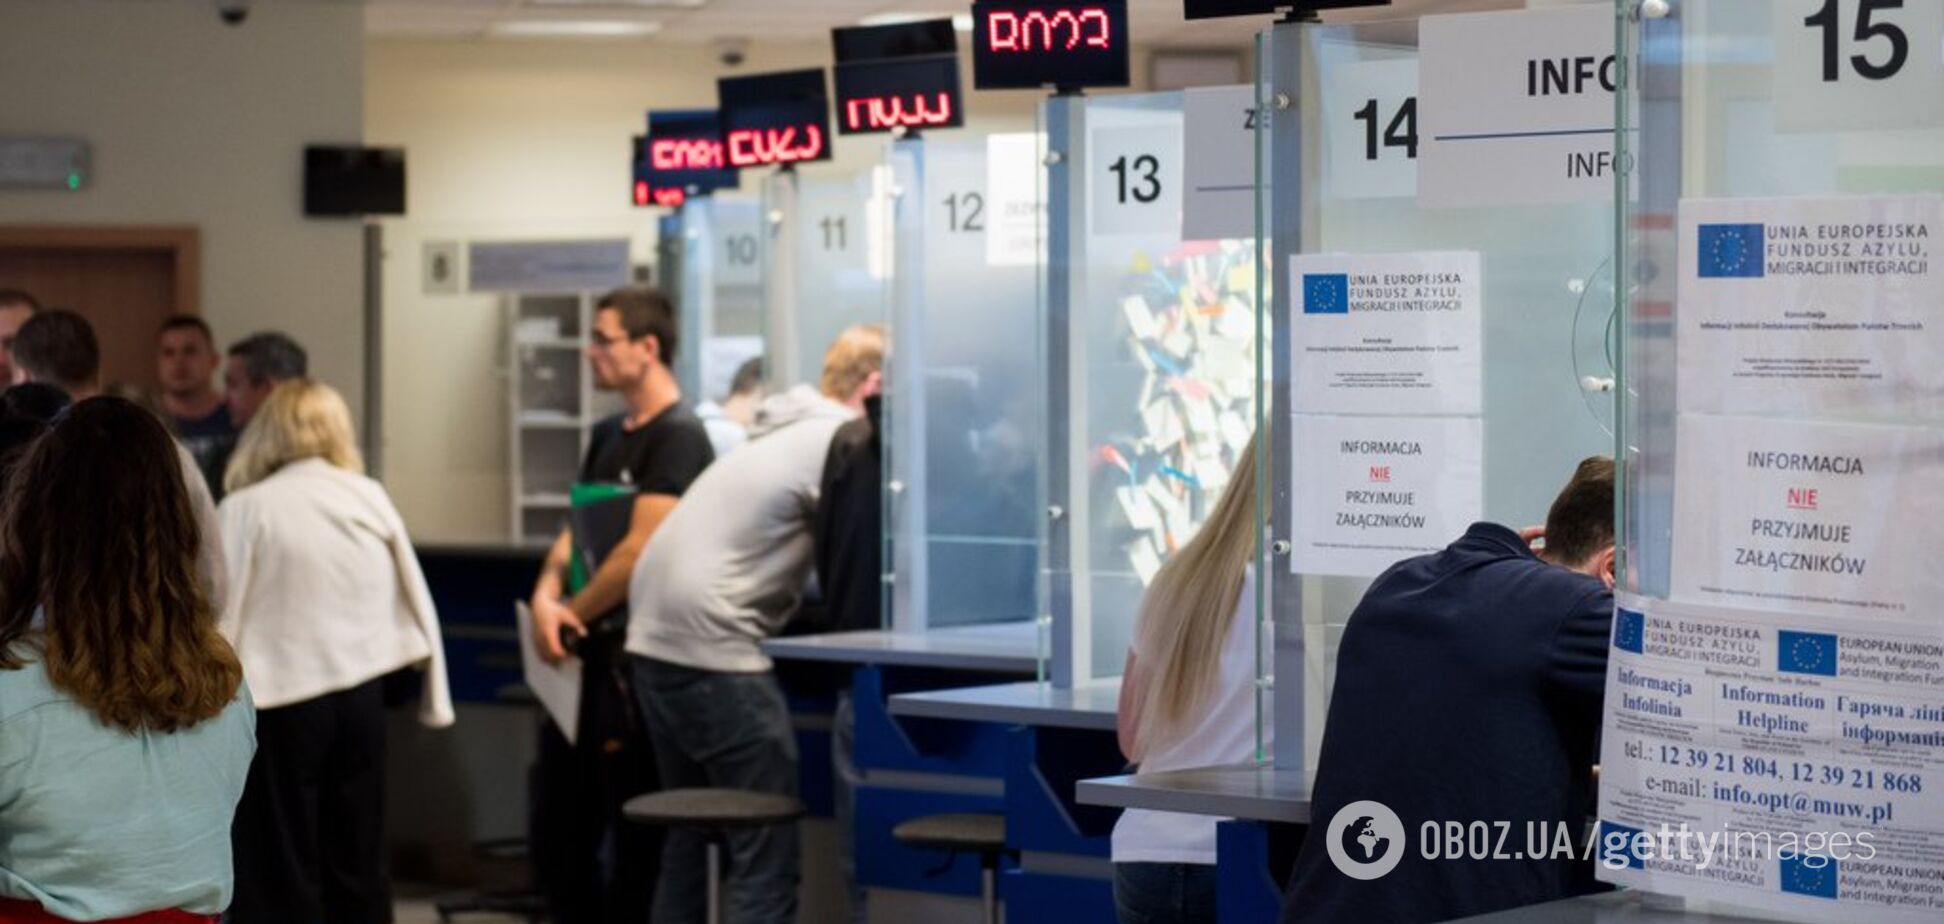 Евросоюз готовит новые правила для получения визы: что изменится